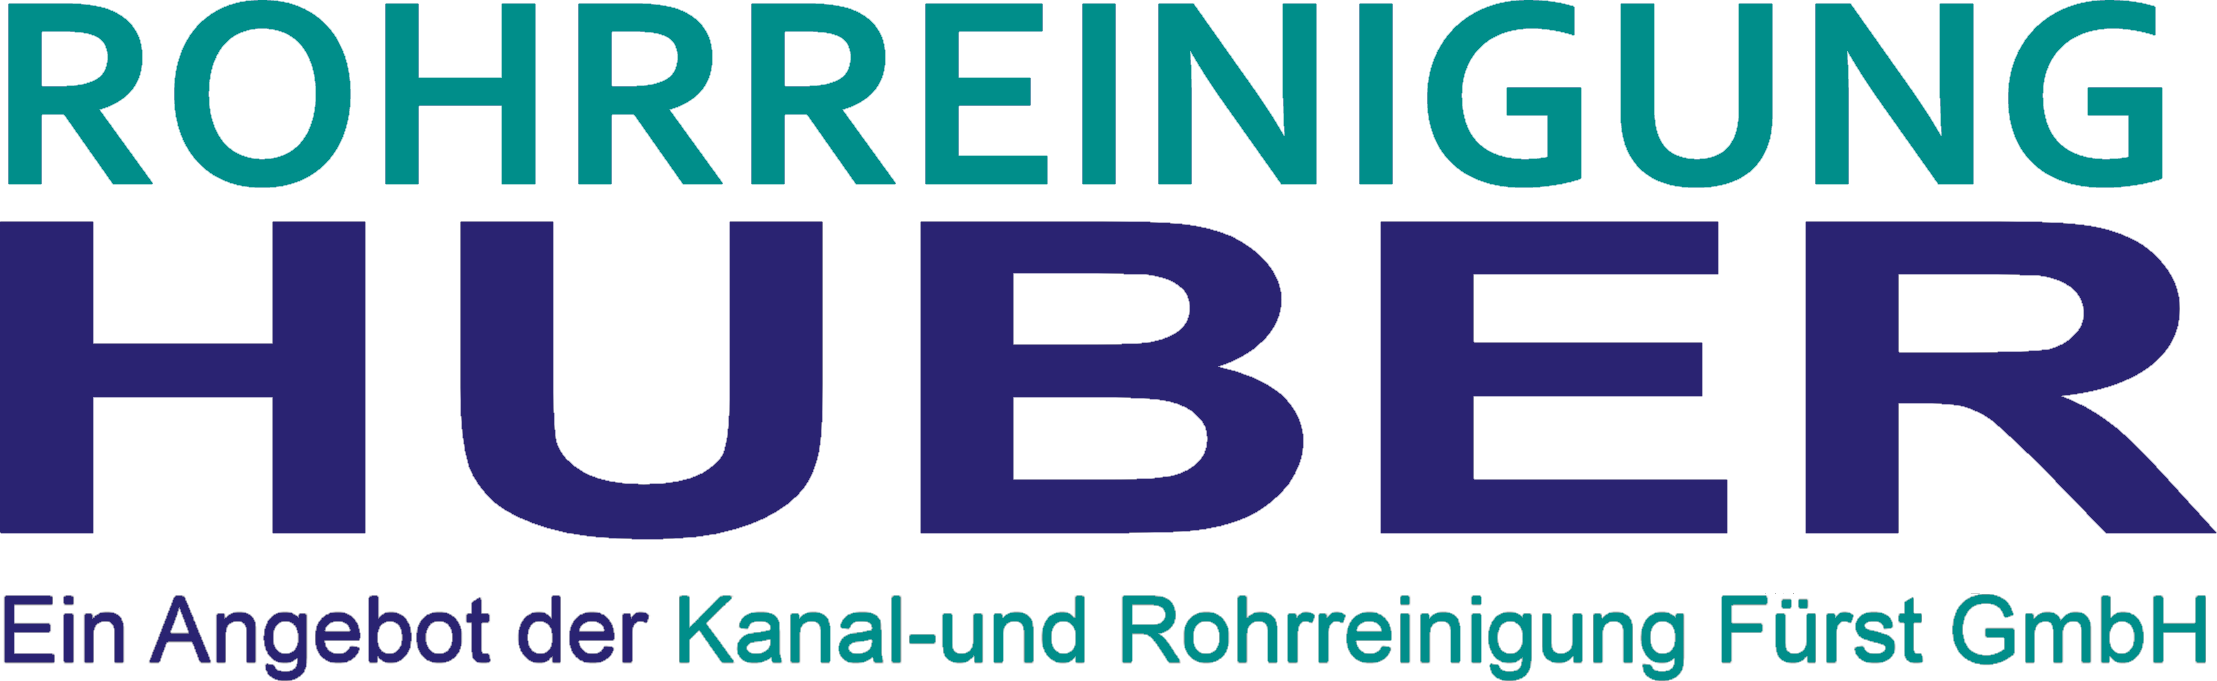 Rohrreinigung Huber - Rohrreinigung für Oberöfflingen